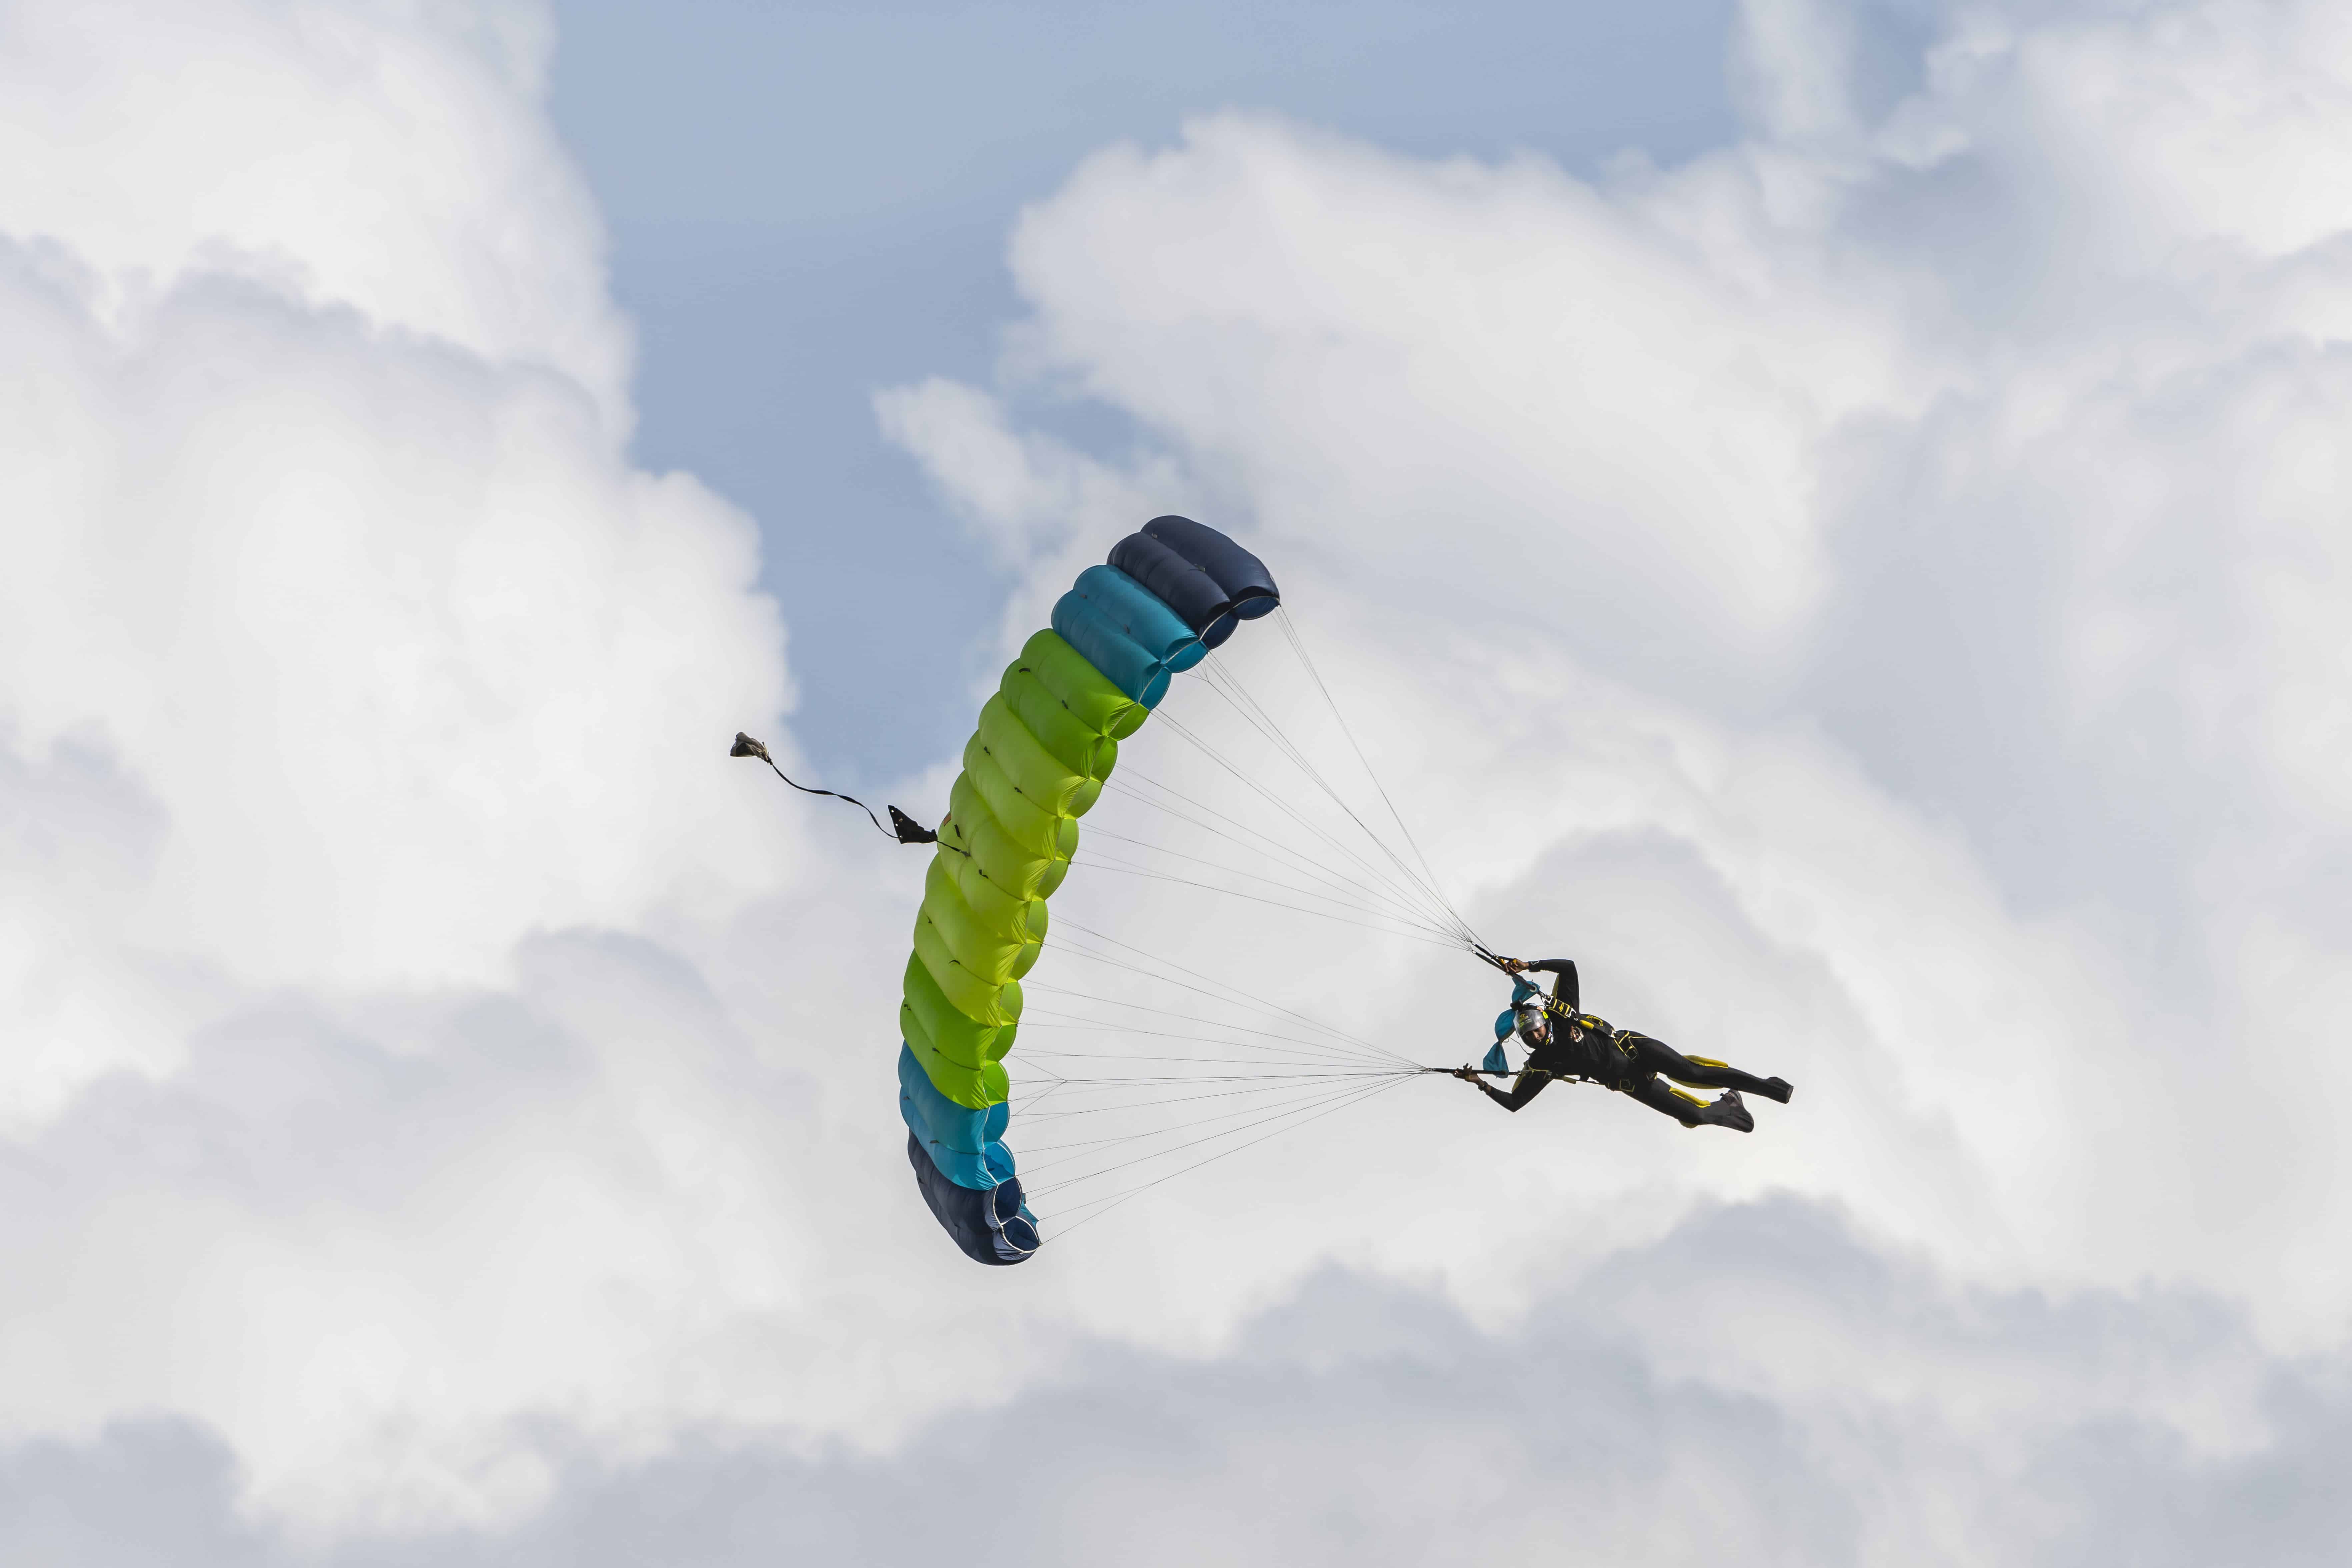 Algunos de los paracaidistas de la fuerza aérea haciendo gala de sus habilidades y valentía en el descenso.